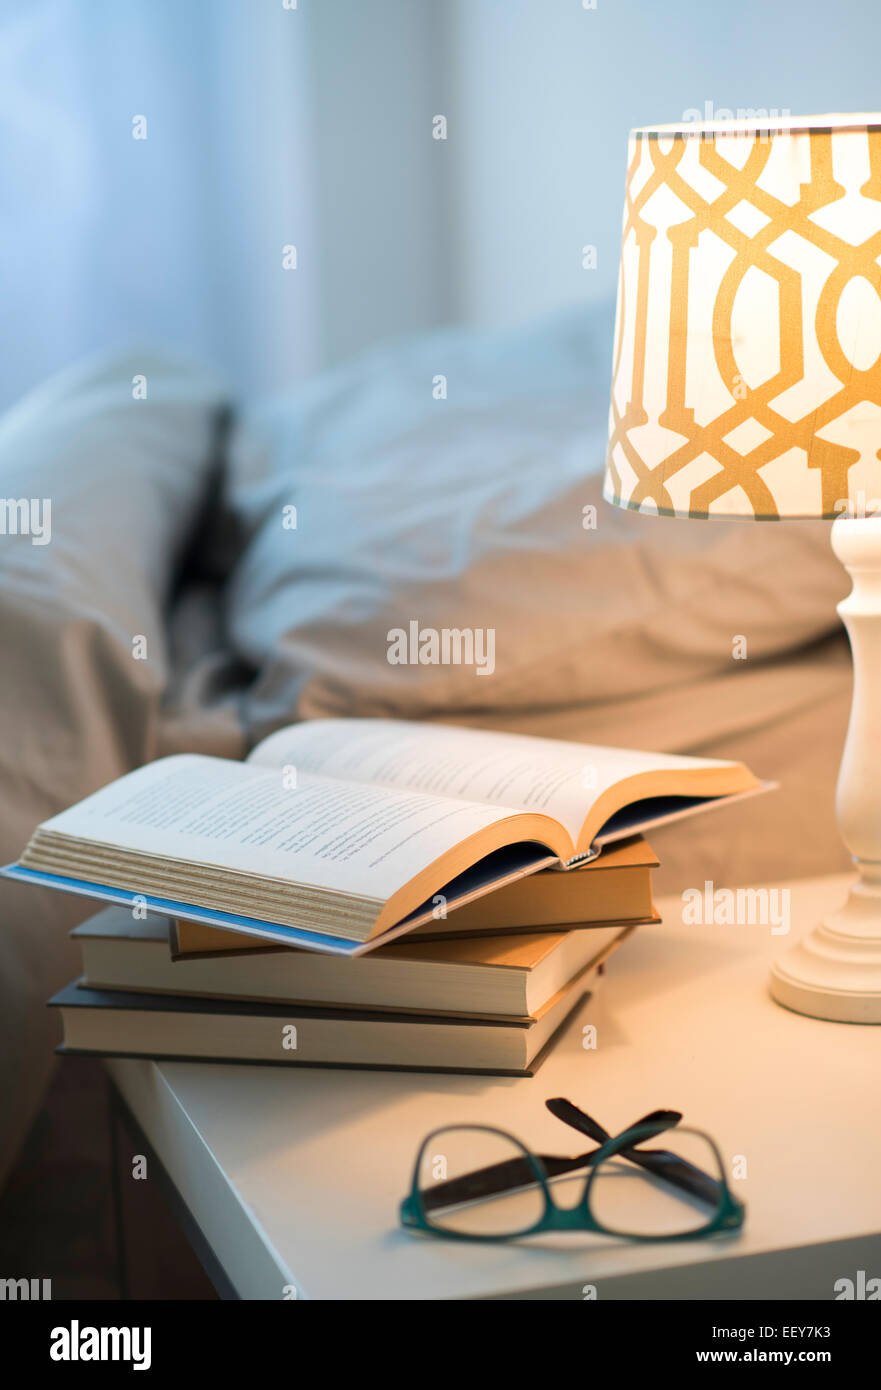 Letto con lampada, libri e occhiali sul comodino Foto Stock